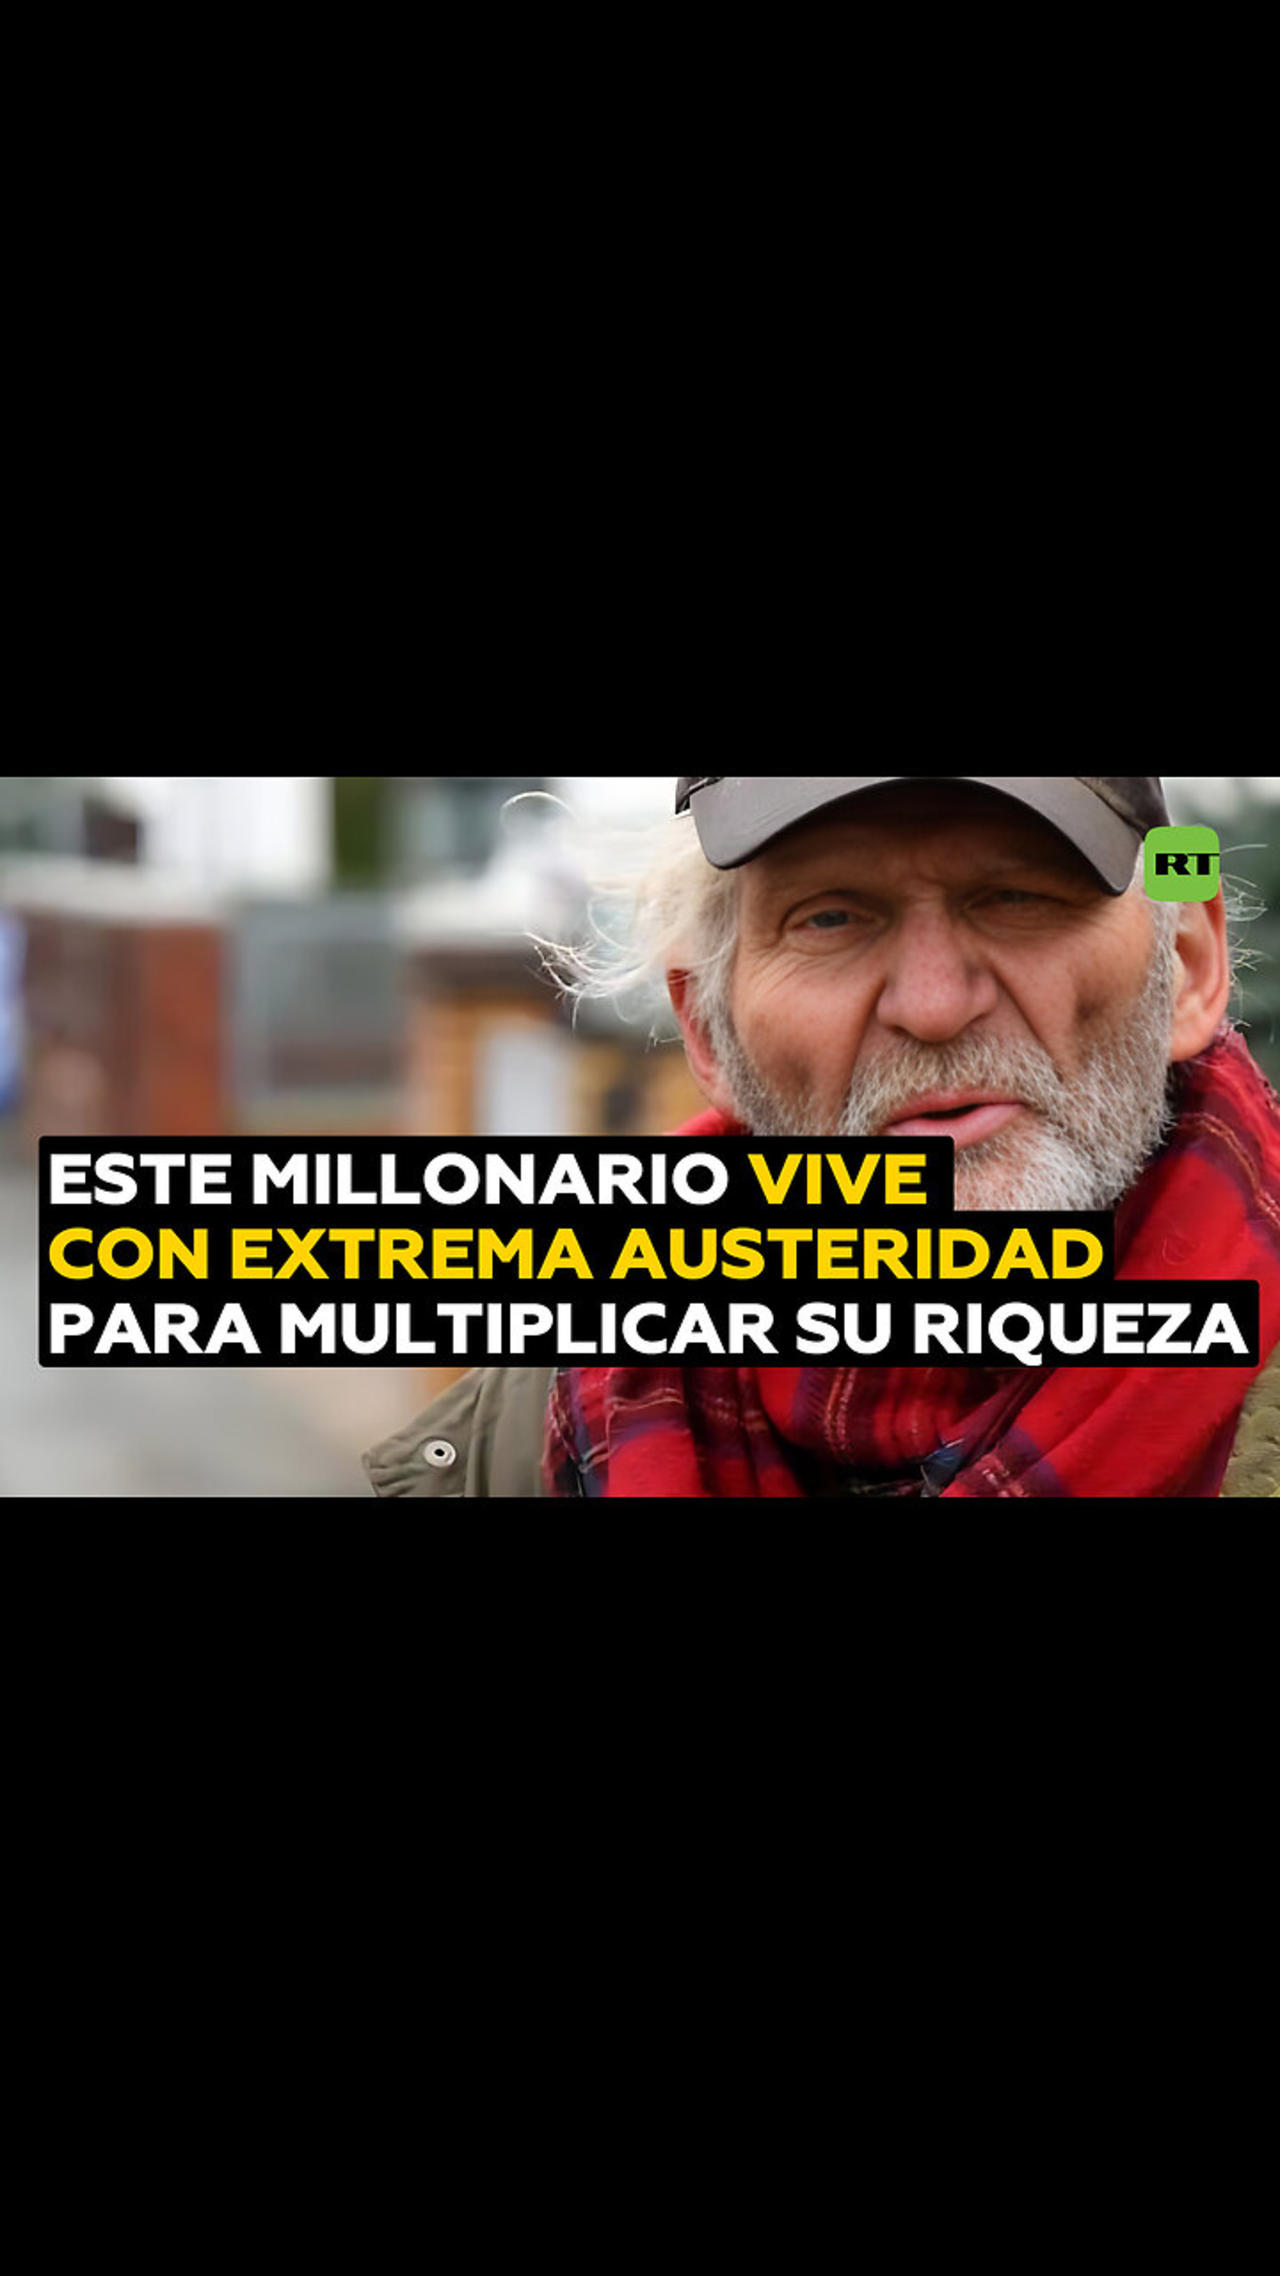 Hombre millonario vive gastando 5 euros al mes en comida